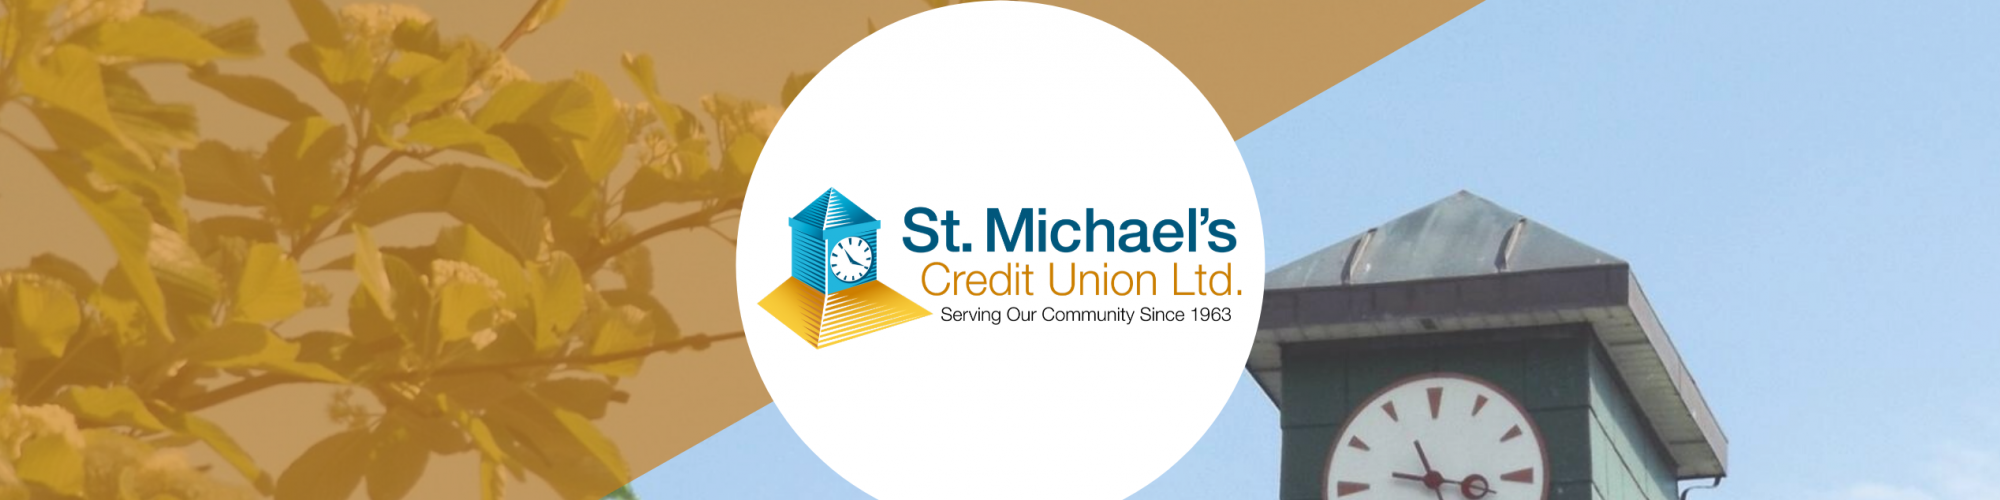 St. Michael's Credit Union